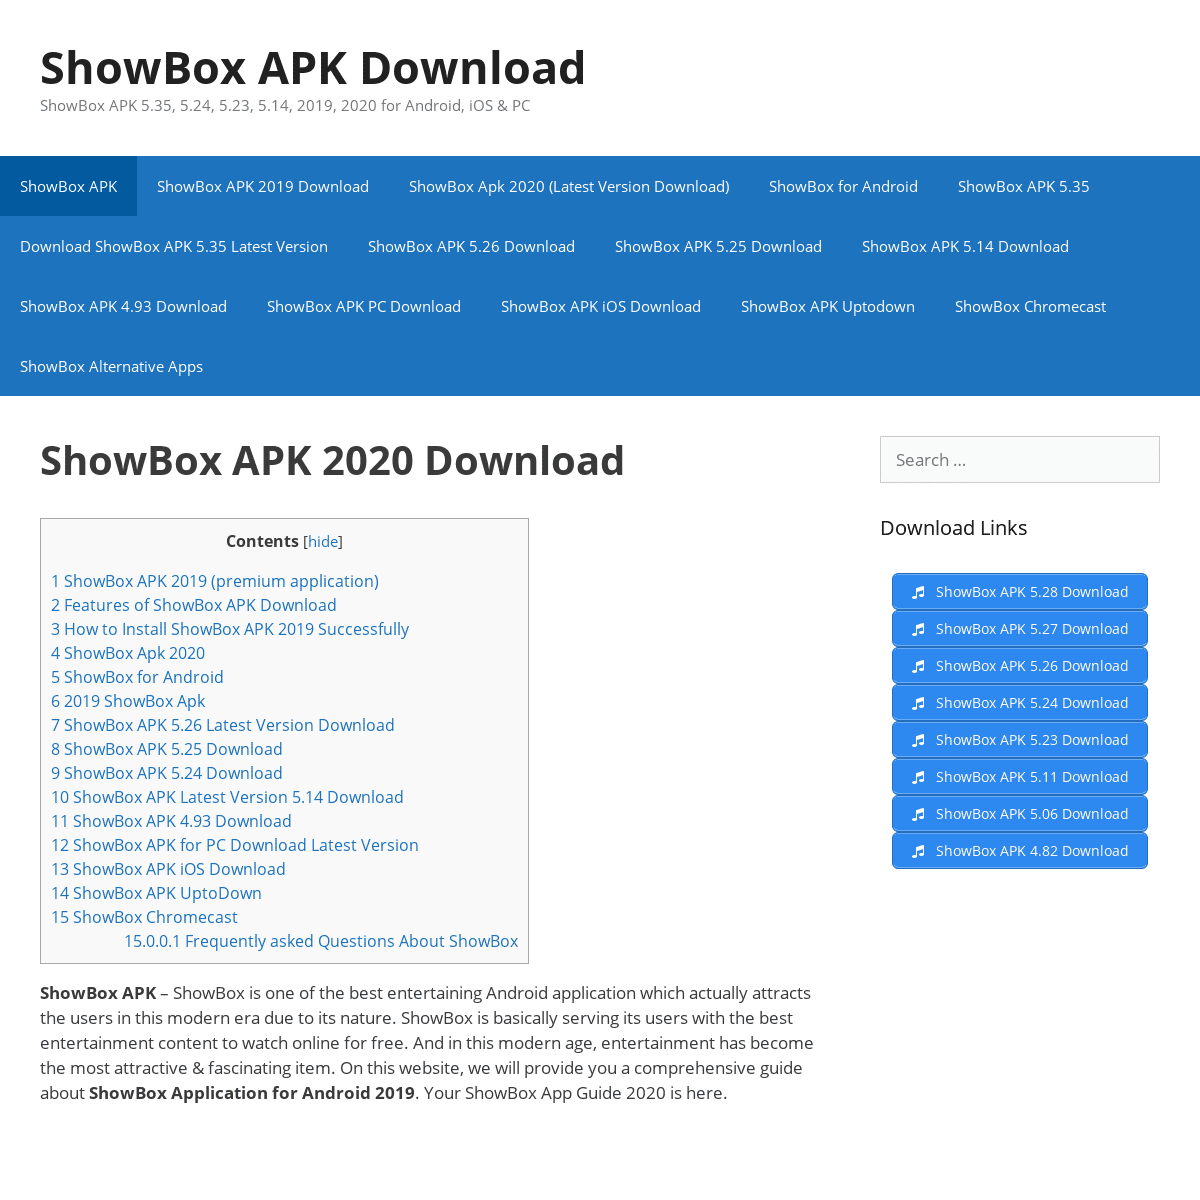 A complete backup of showboxappguide.com